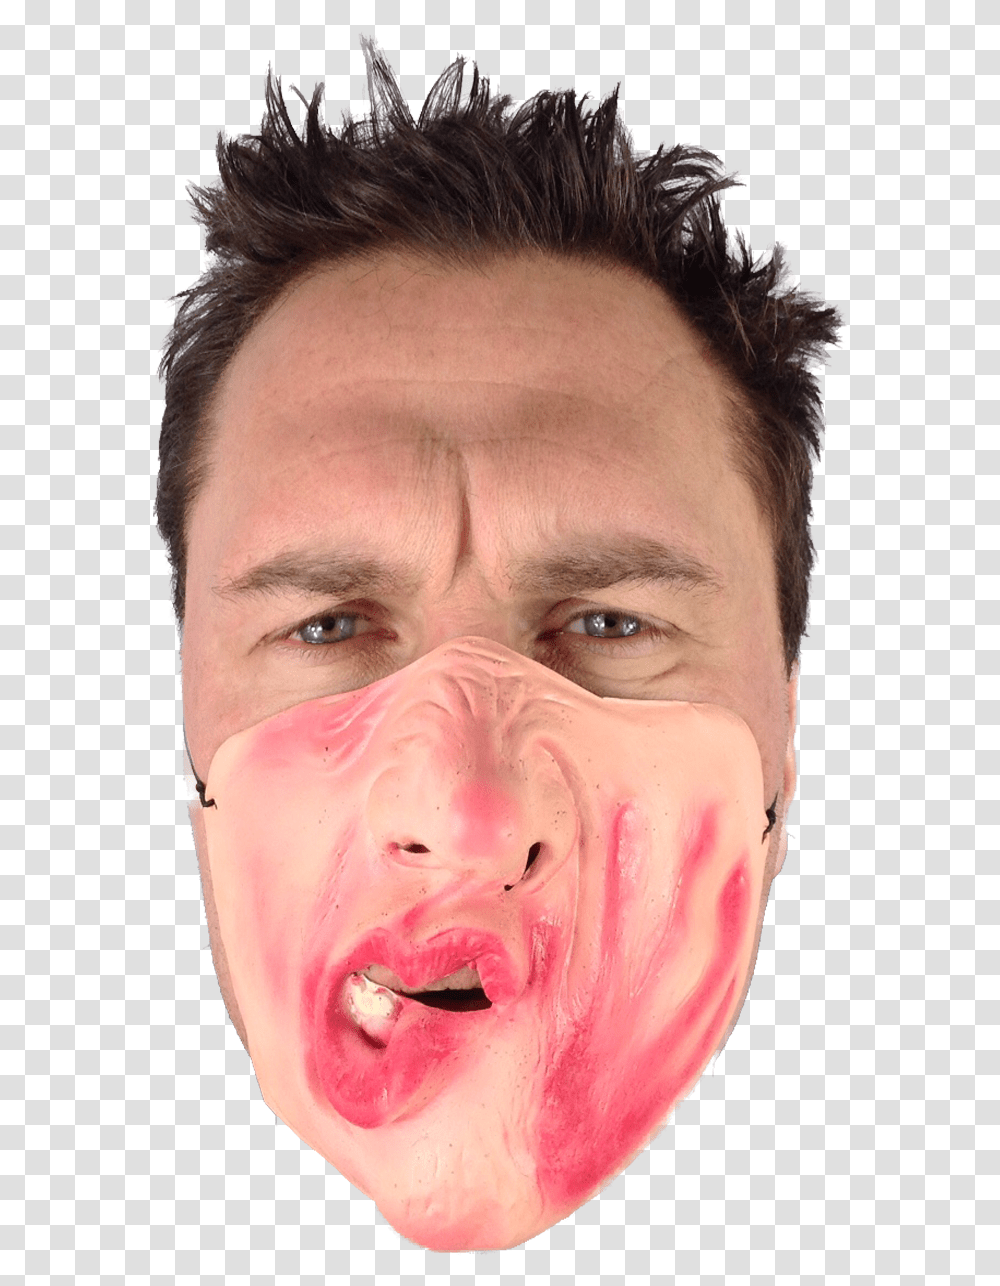 Conor Mcgregor Face Slapped Face, Person, Head, Mouth, Portrait Transparent Png